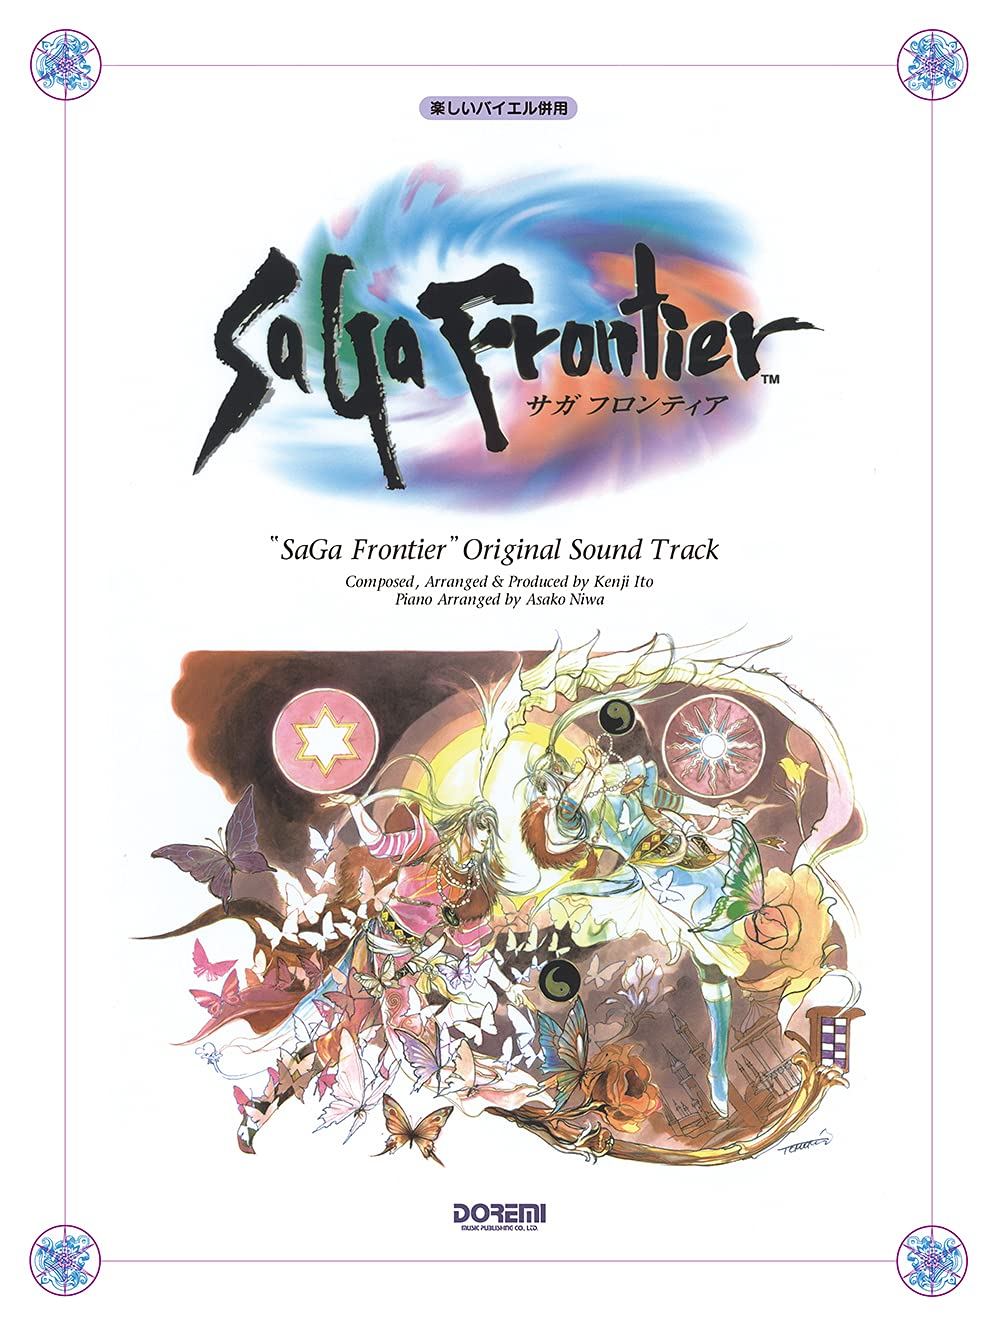 サガフロンティア2 SaGa Frontier II オリジナルサウンドトラック - CD